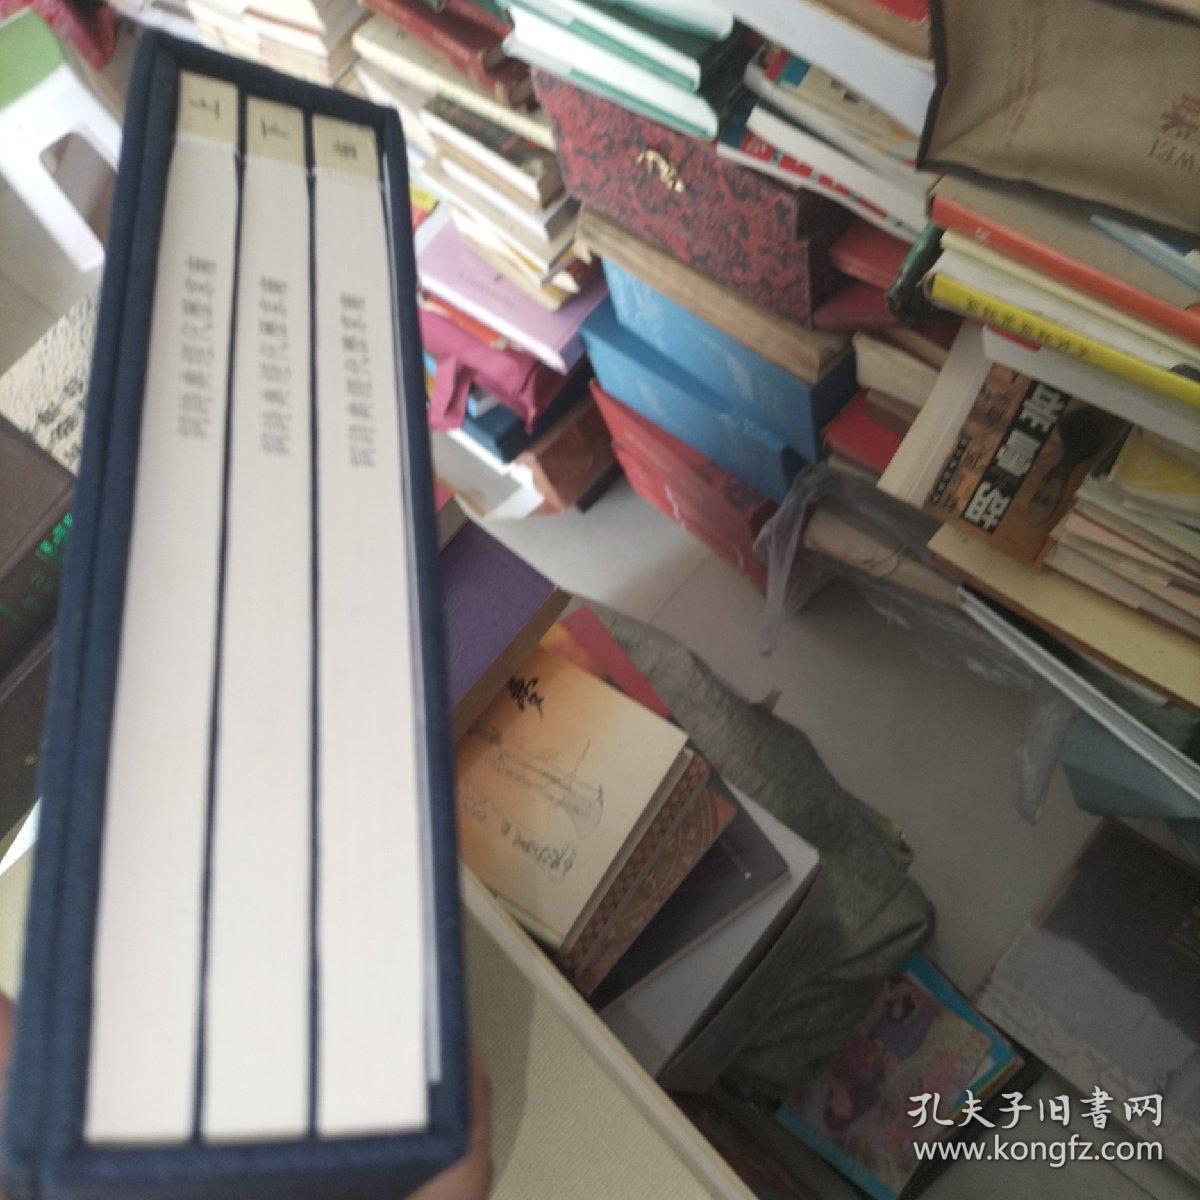 线装本-南京历代经典诗词   全3册  全新正版图书